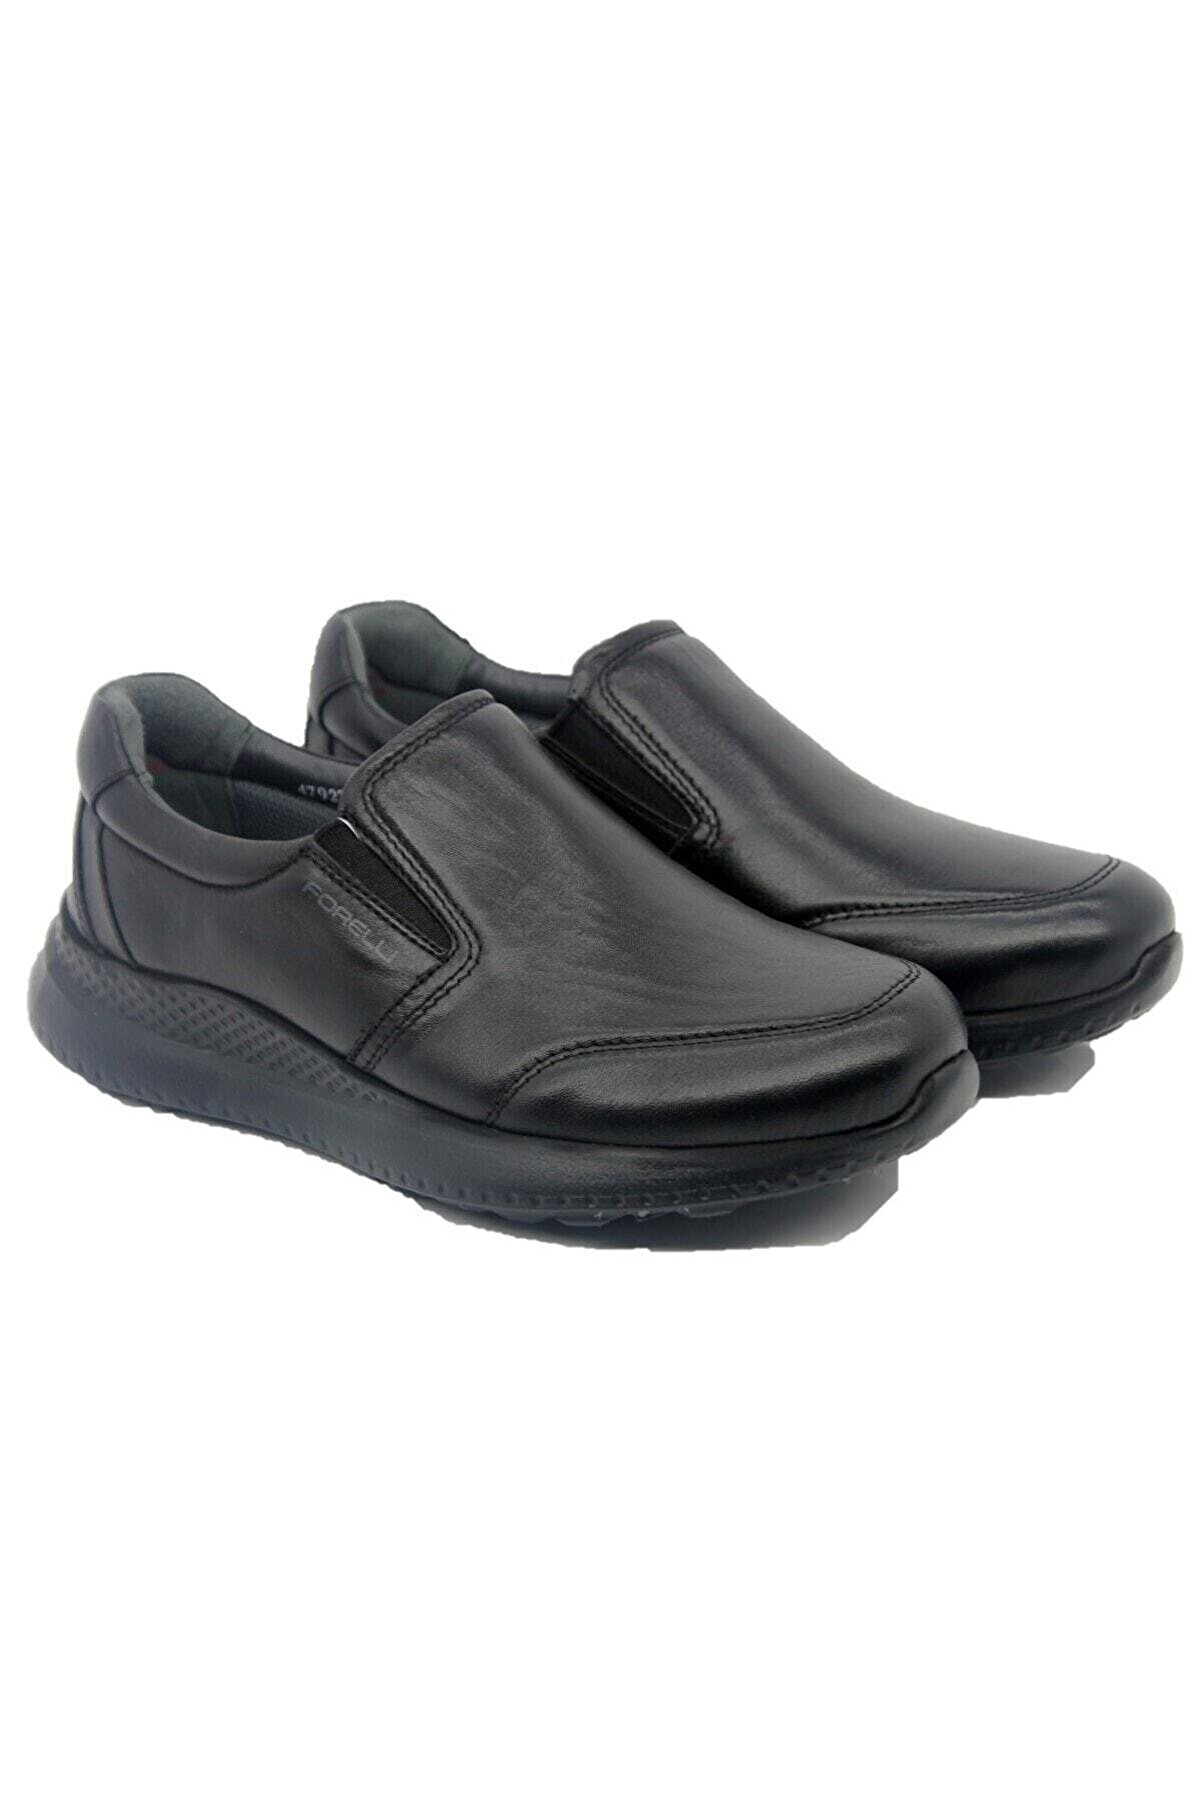 Forelli Nexus-g Comfort Erkek Ayakkabı Siyah